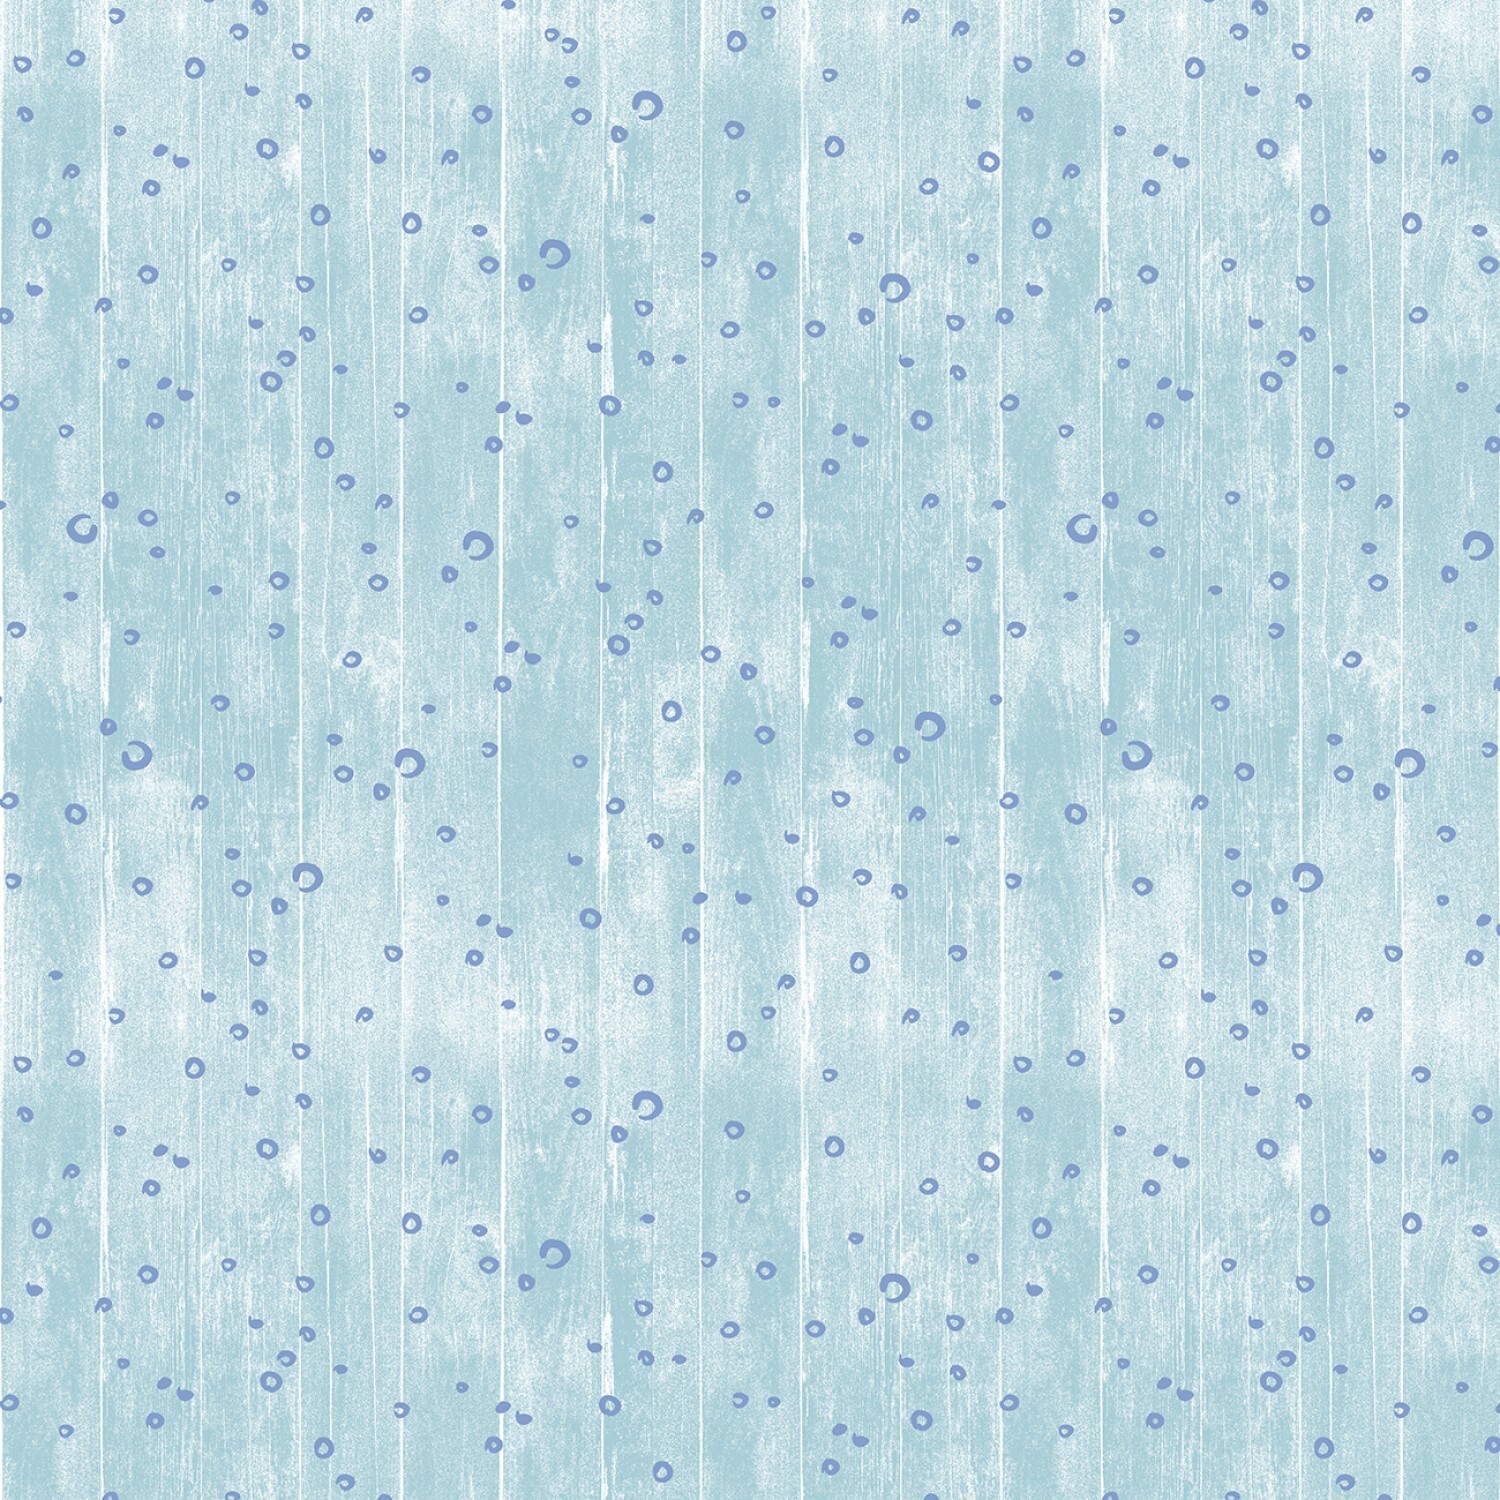 Vitamin Sea - Bubbles - Cloud Blue - 1/2m cut 58439